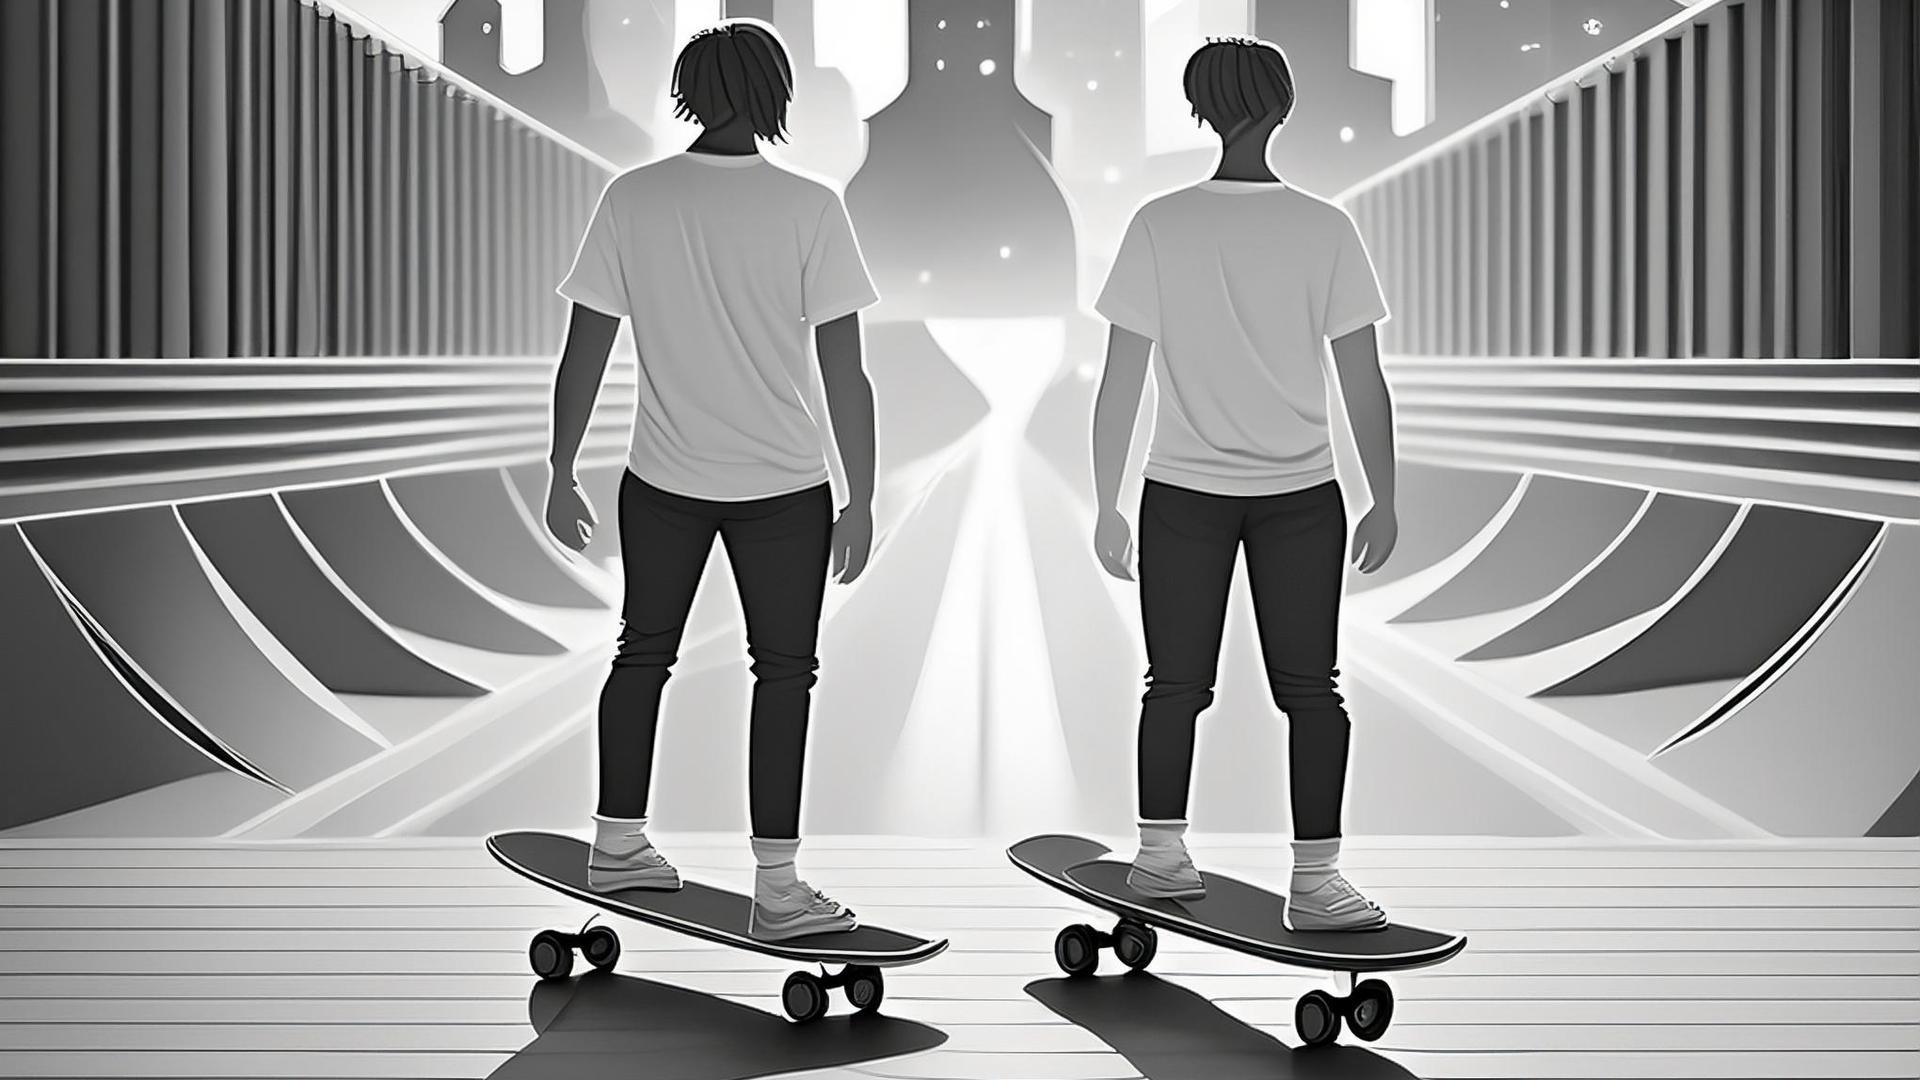 Illustration två personer på skateboard.